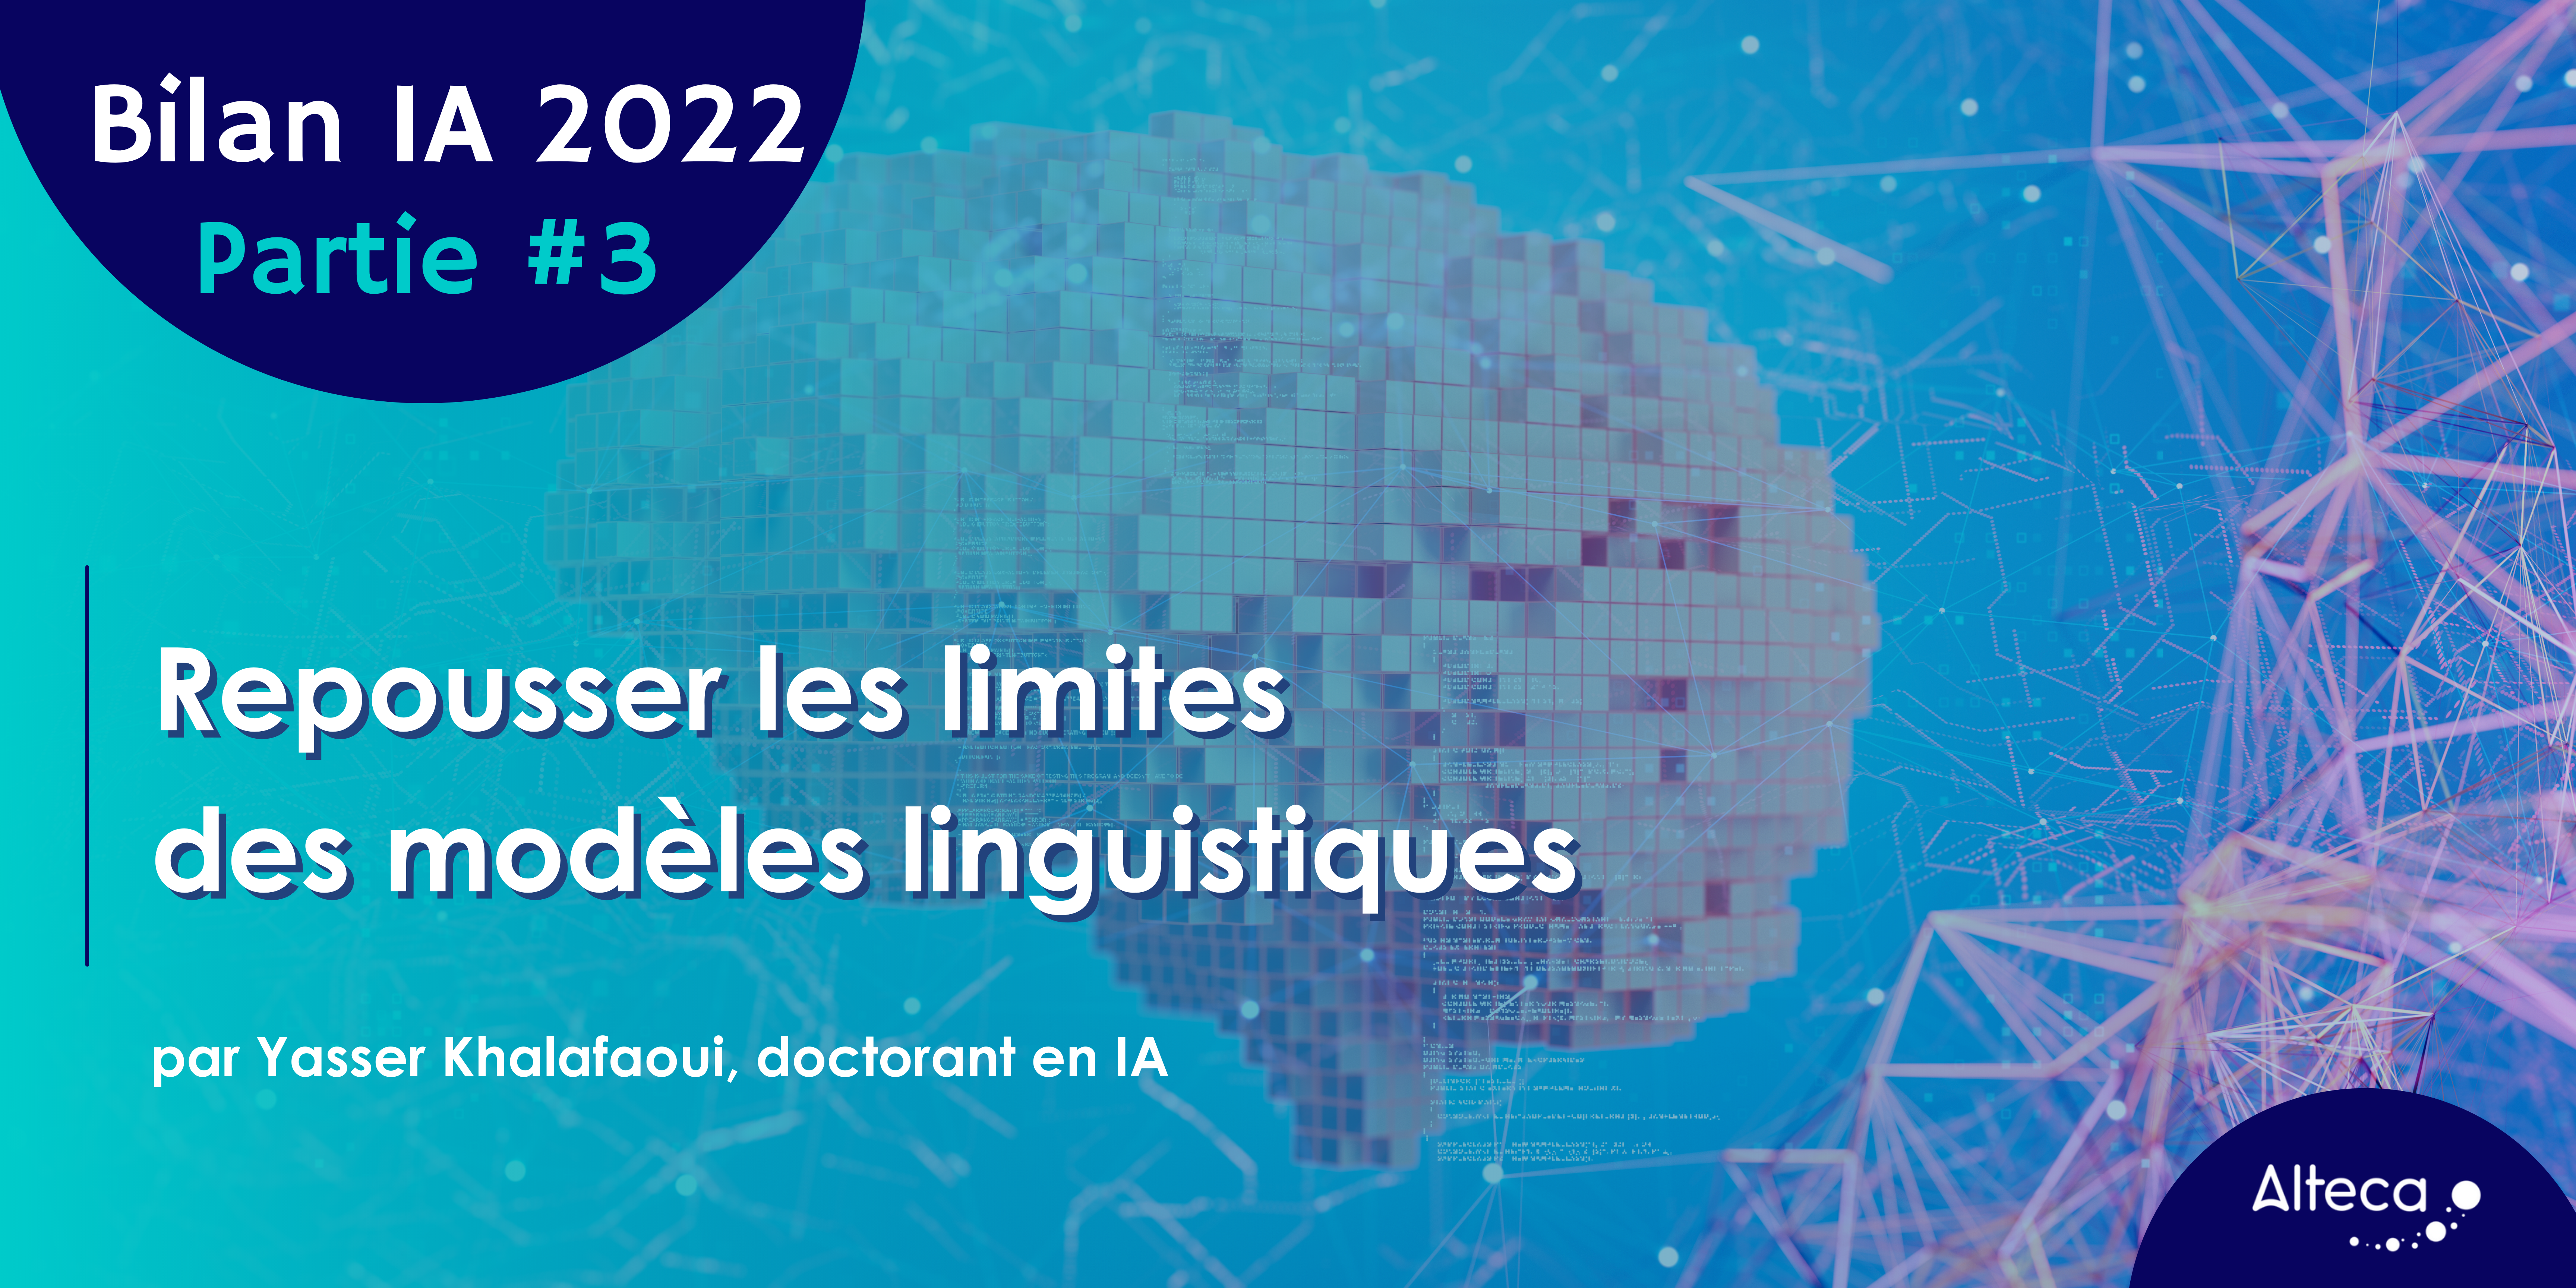 Bilan IA 2022 Partie 3 : repousser les limites des modèles linguistiques.